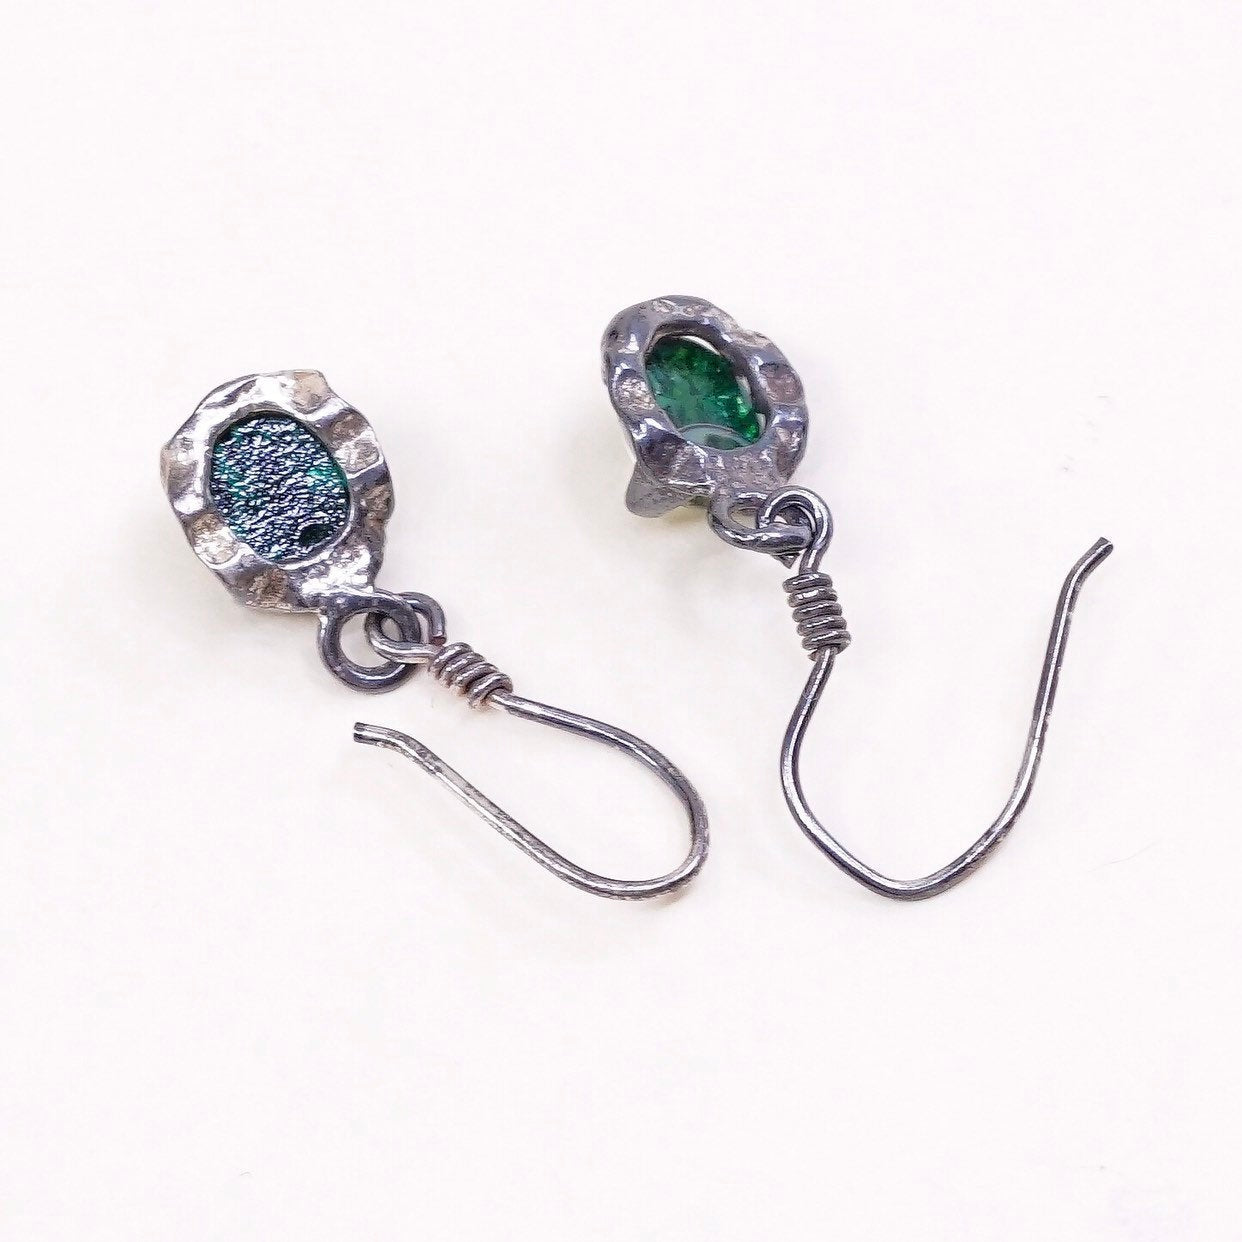 VTG Sterling silver handmade earrings, 925 hooks w/ green foiled glass drops